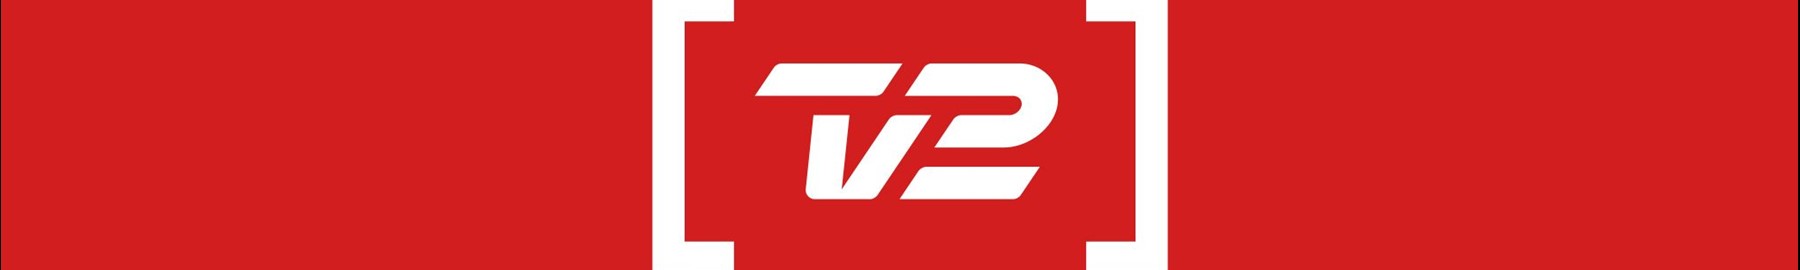 TV2 klar med ny facebookside om tilgængelighed